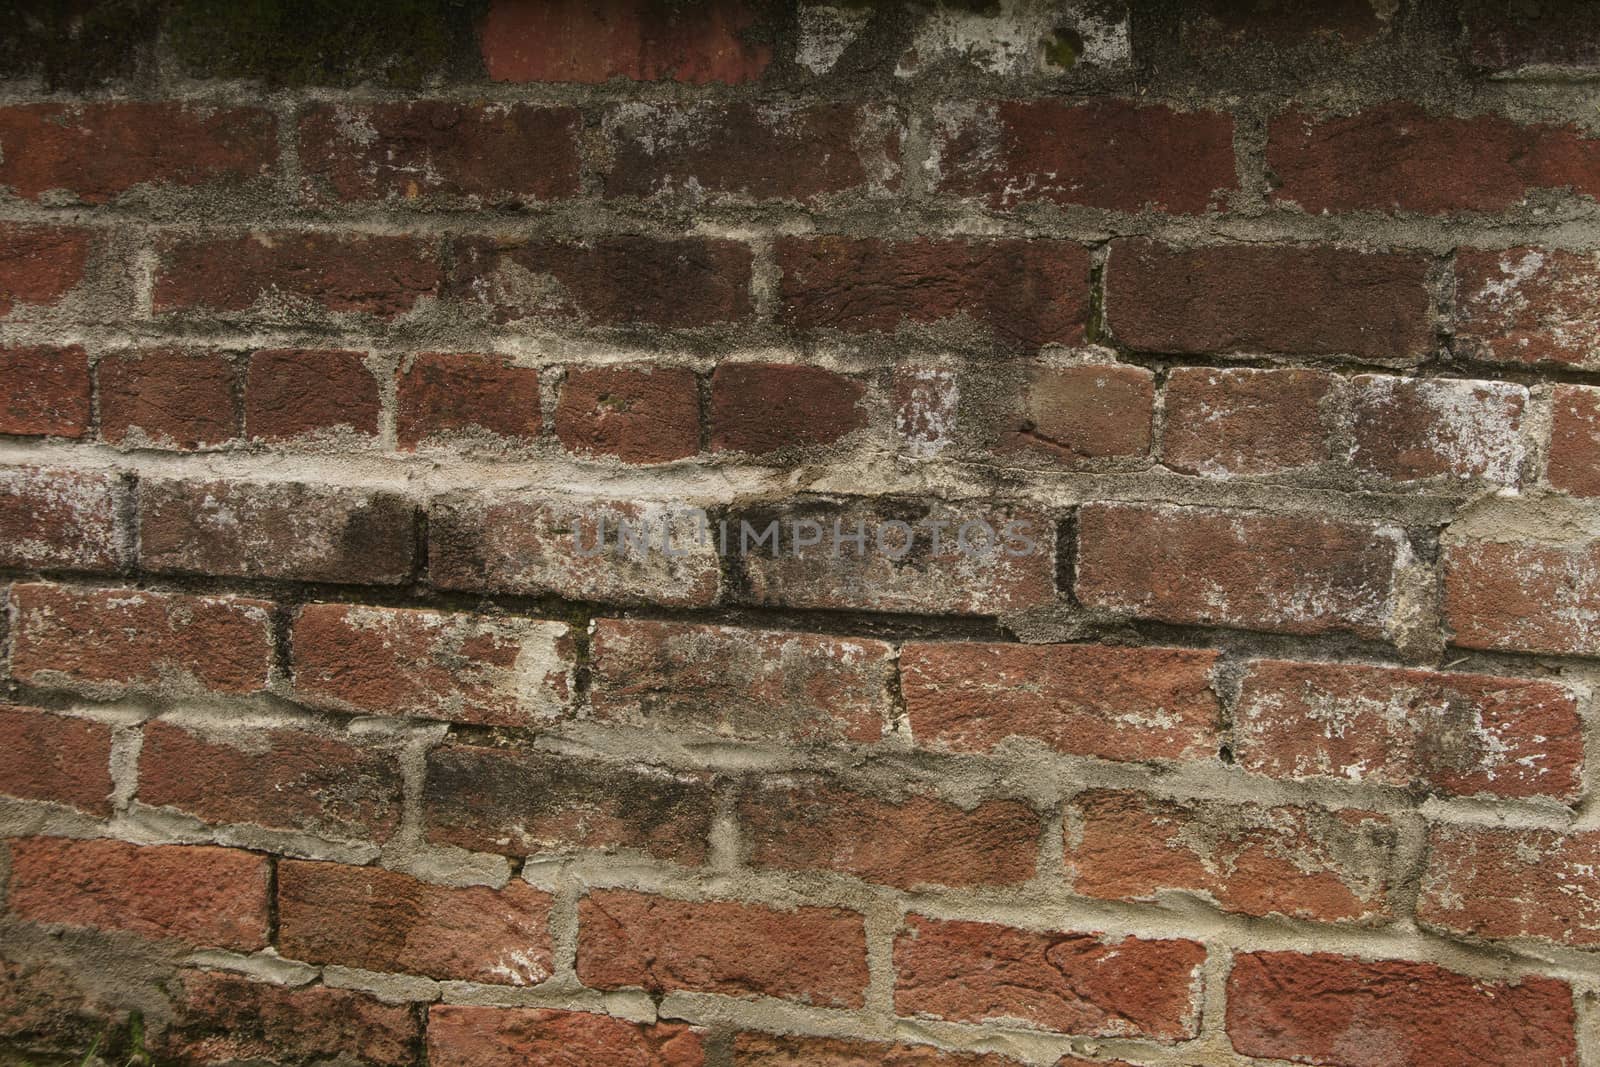 Abstract wall of decaying bricks